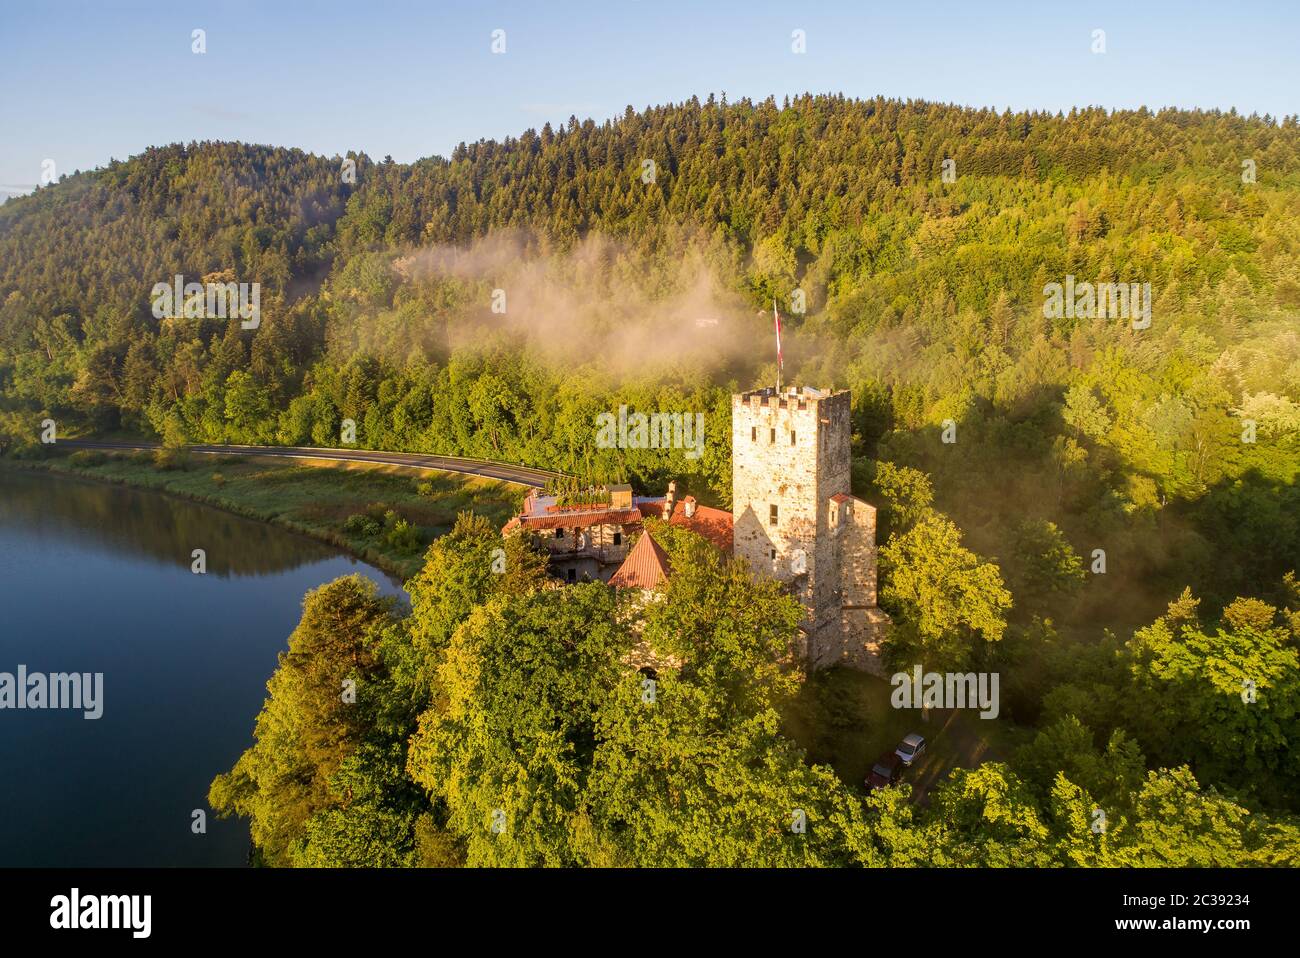 Mittelalterliche Burg Tropsztyn in Kleinpolen am Fluss Dunajec. Luftaufnahme im Sonnenaufgangslicht. Stockfoto